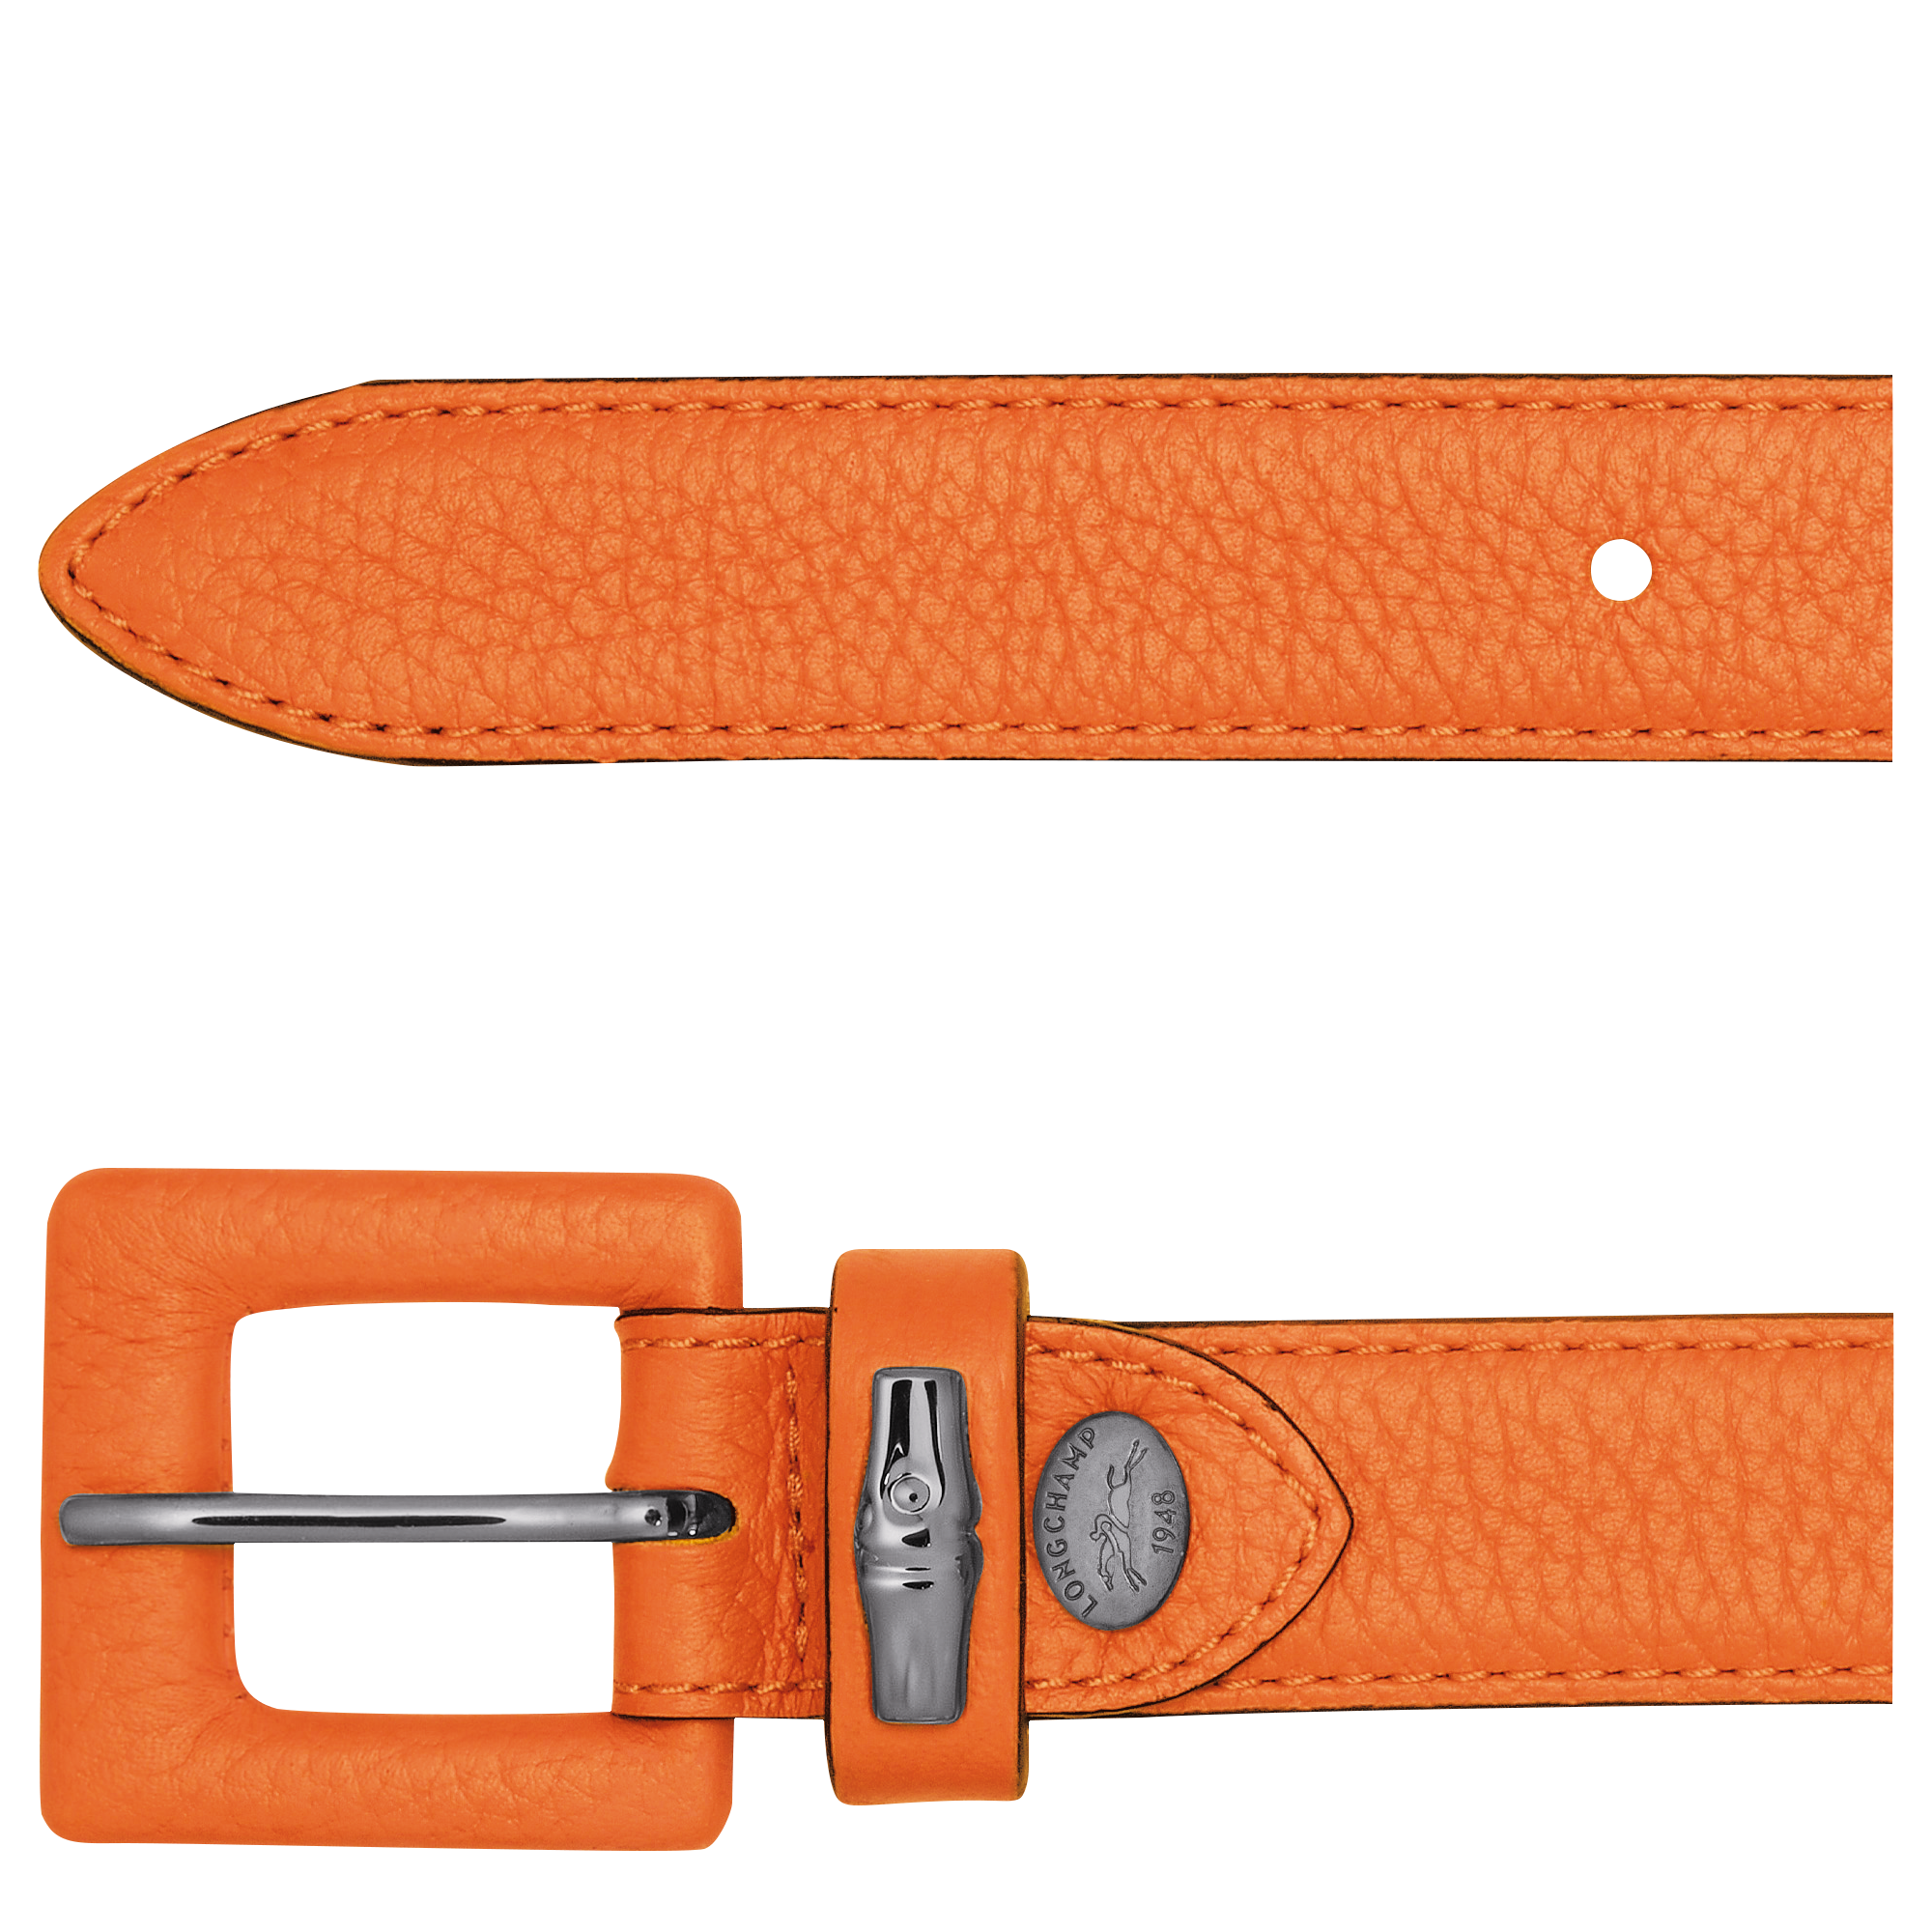 Roseau Essential Ladies' belt, Orange